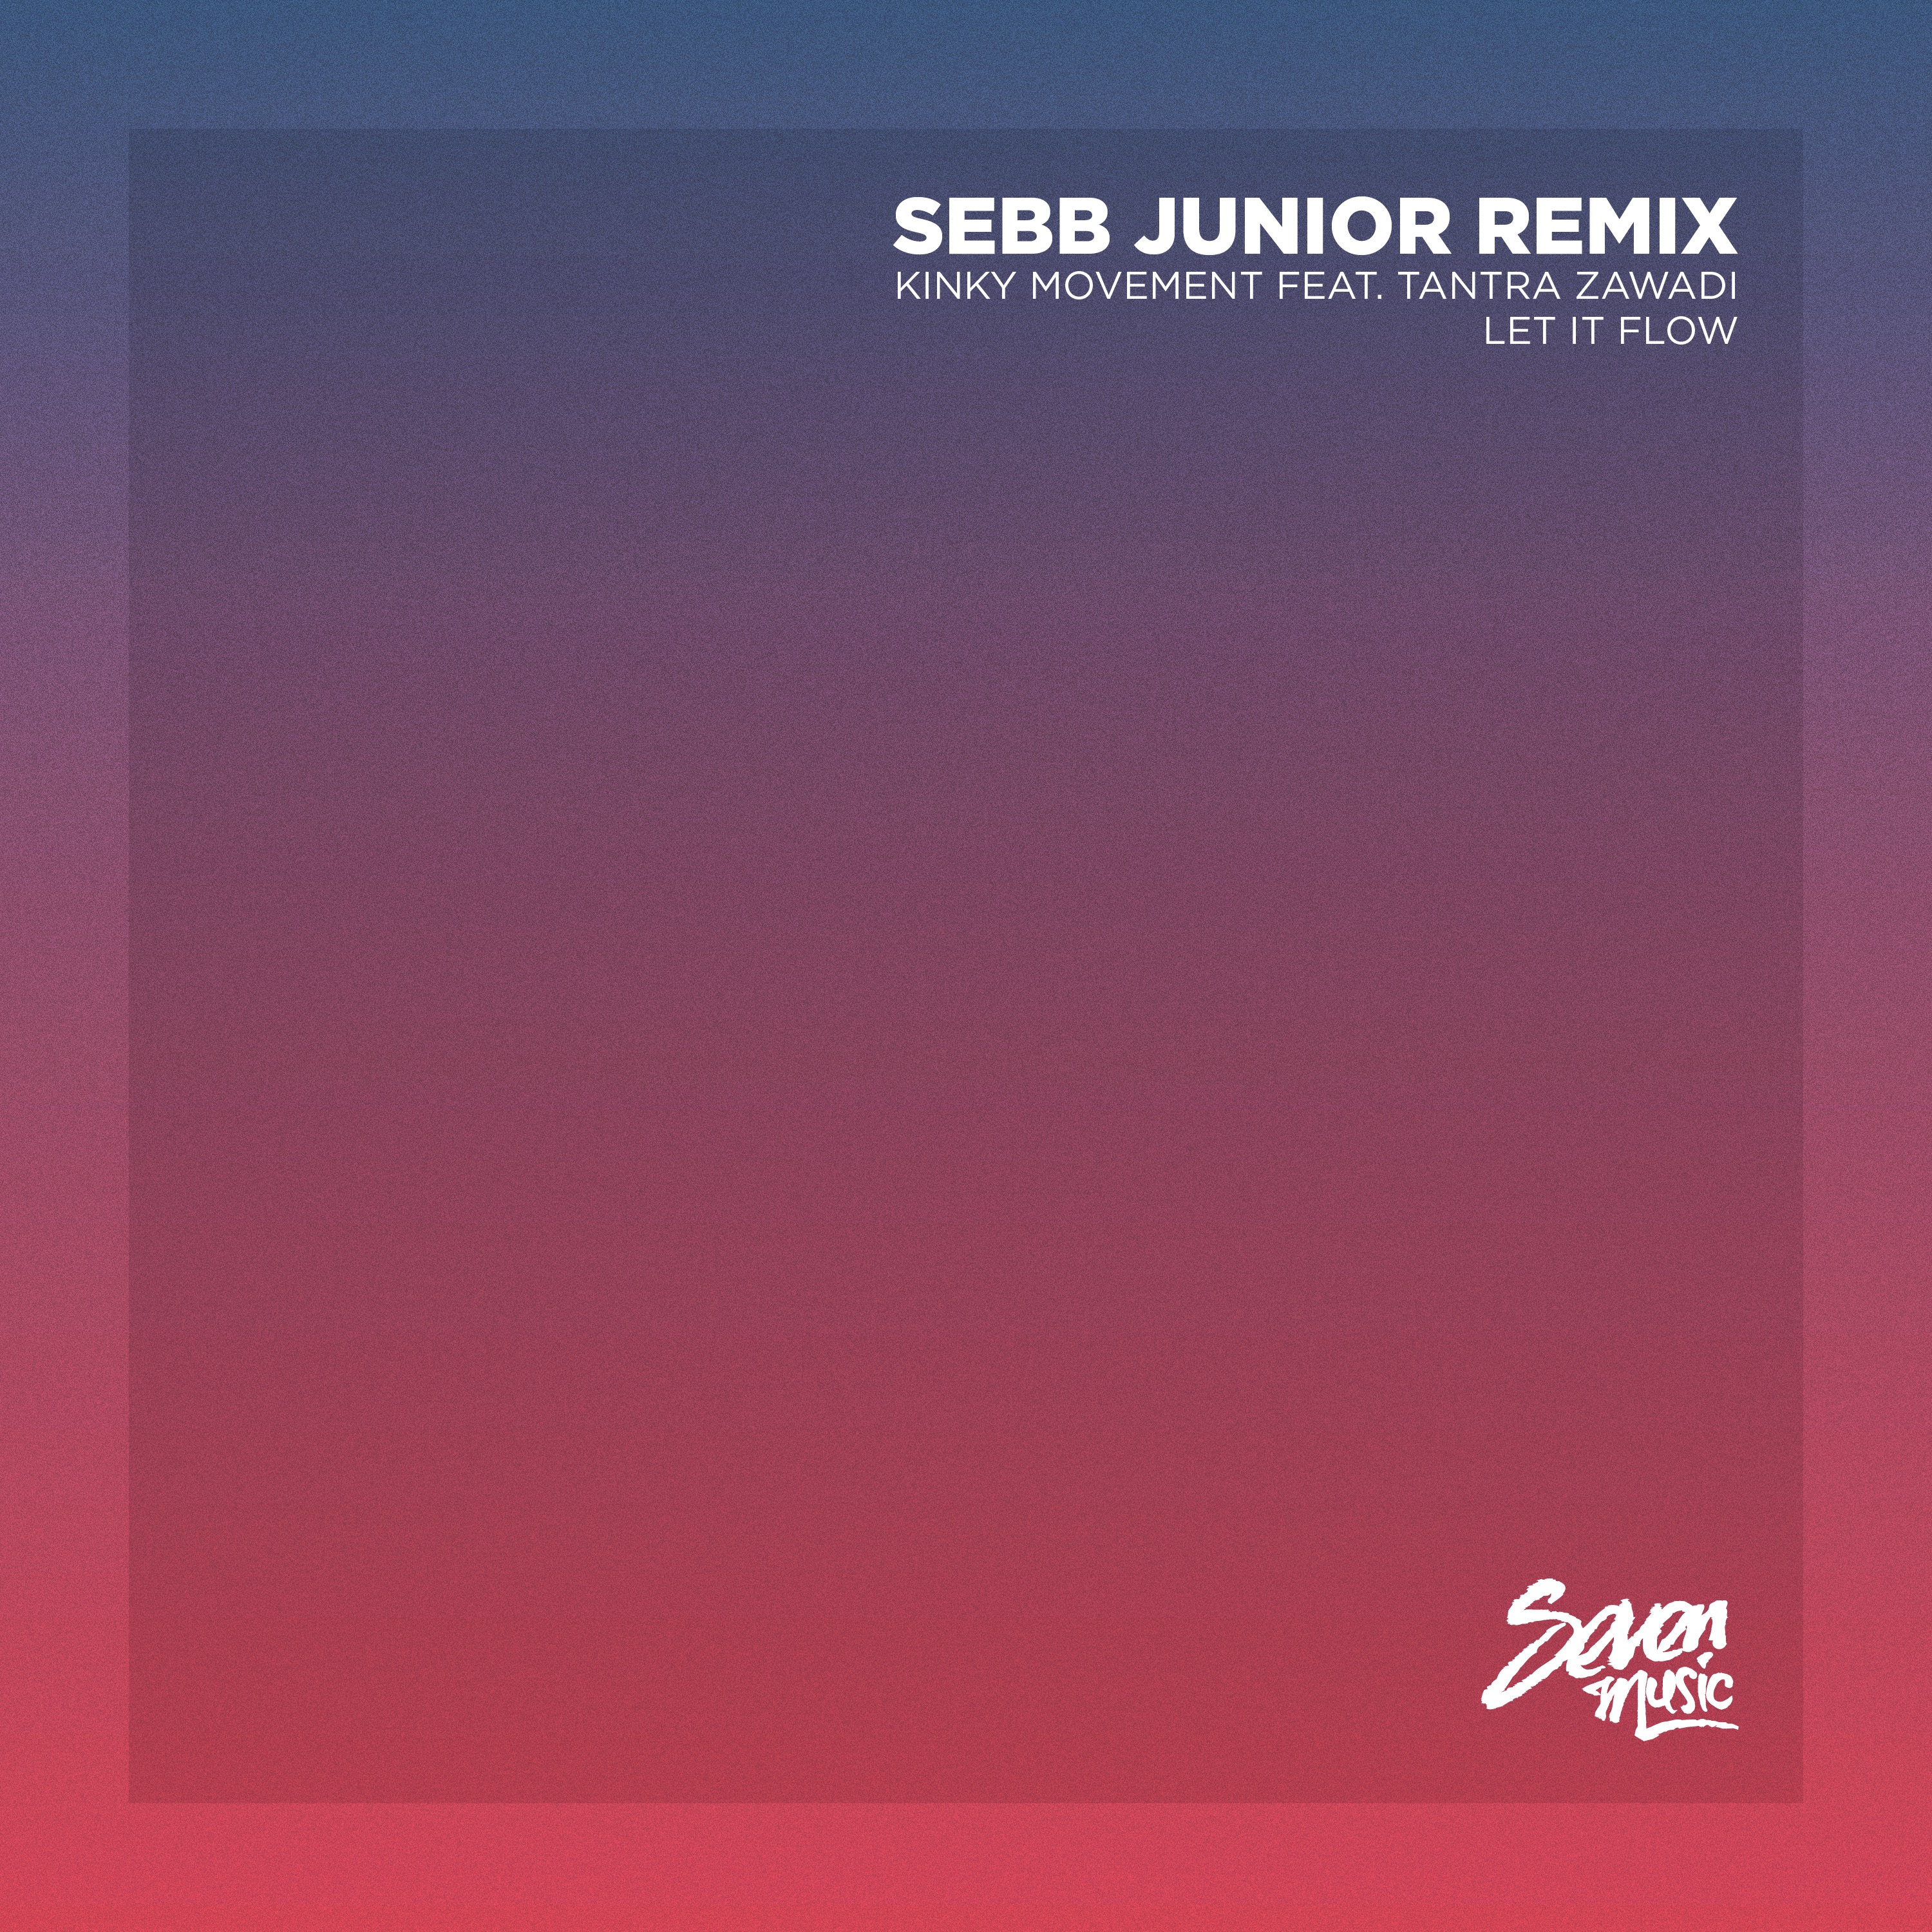 डाउनलोड करा Premiere: Kinky Movement - Let It Flow (Sebb Junior Remix) - Seven Music